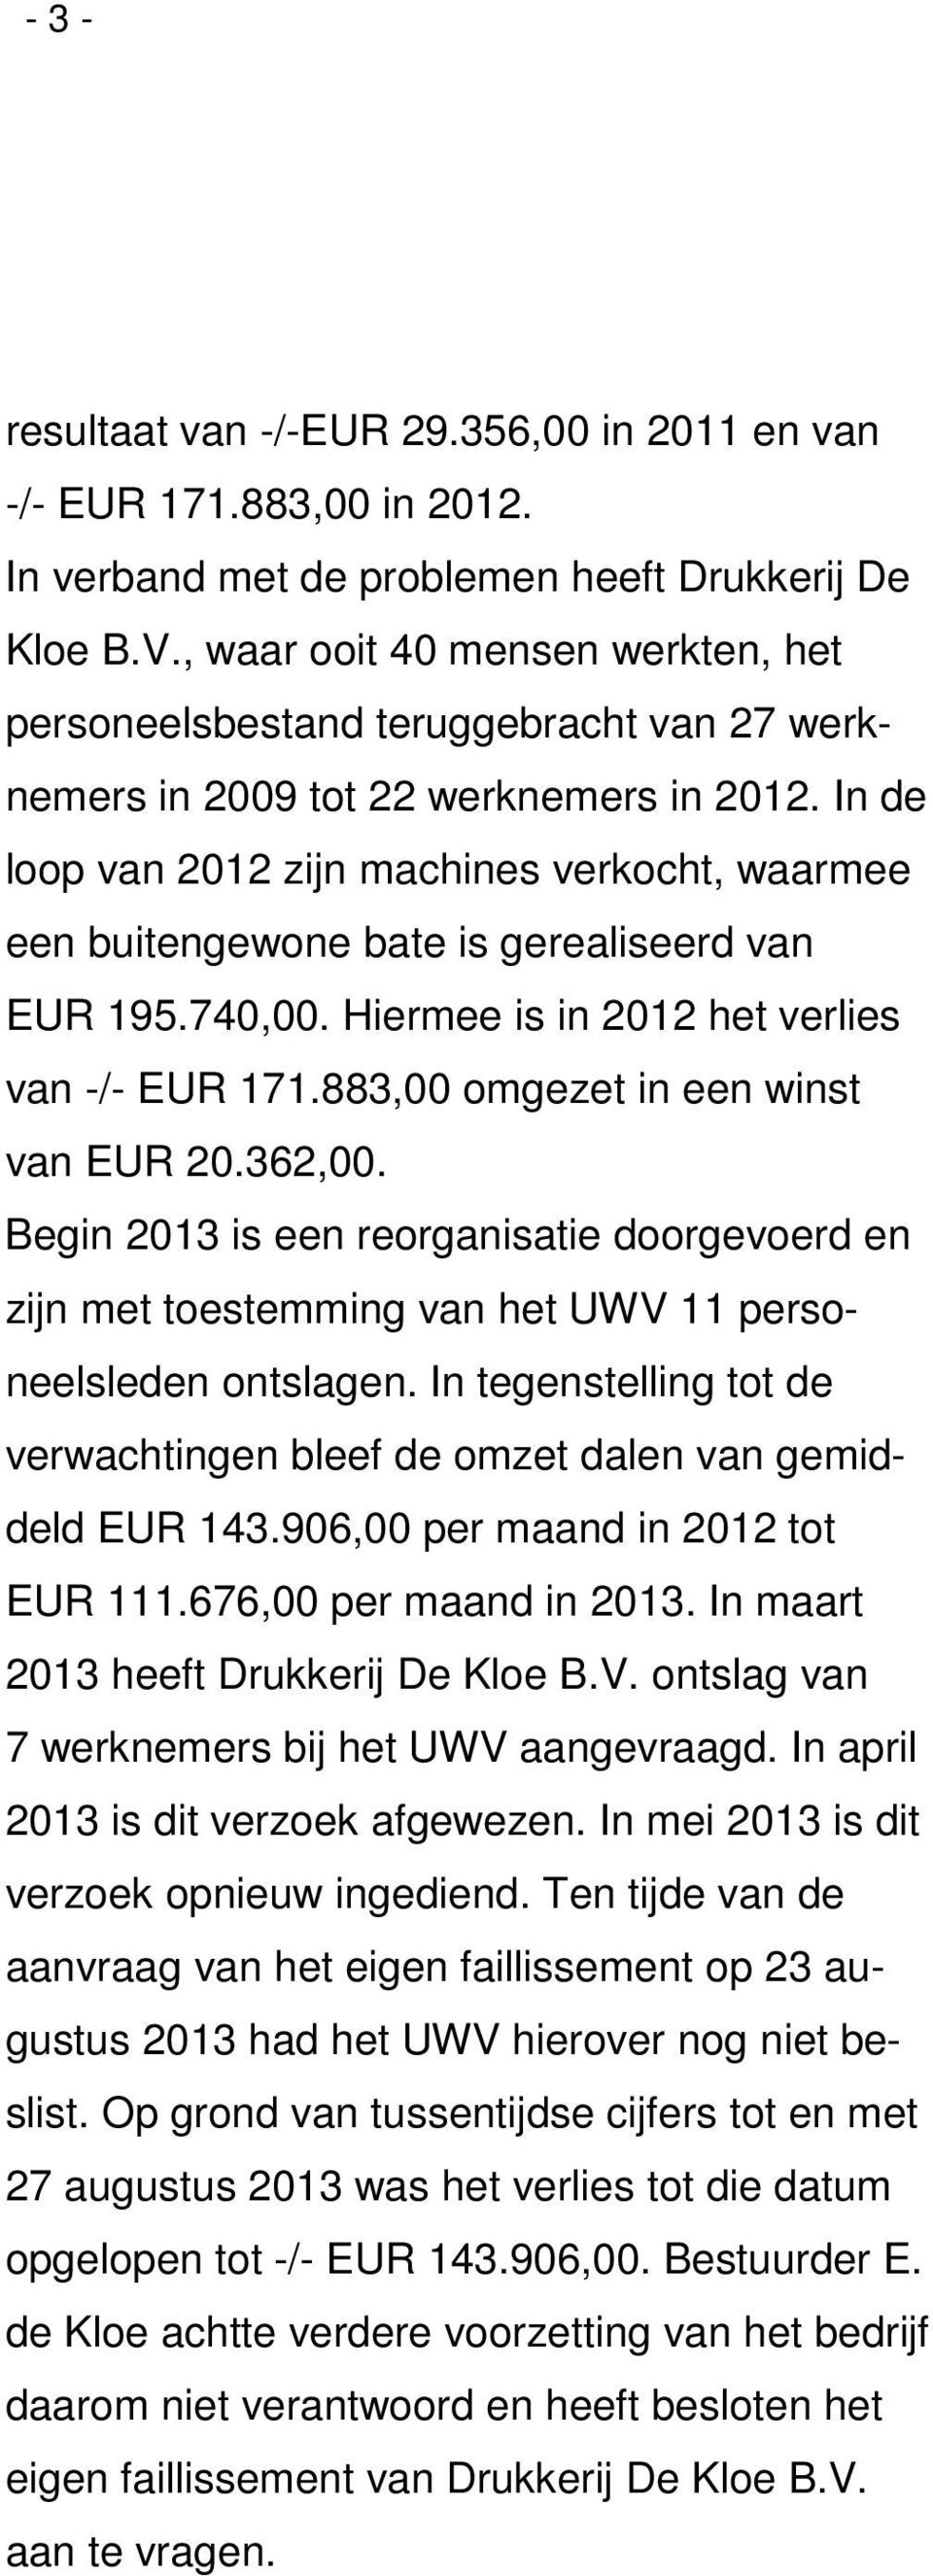 In de loop van 2012 zijn machines verkocht, waarmee een buitengewone bate is gerealiseerd van EUR 195.740,00. Hiermee is in 2012 het verlies van -/- EUR 171.883,00 omgezet in een winst van EUR 20.